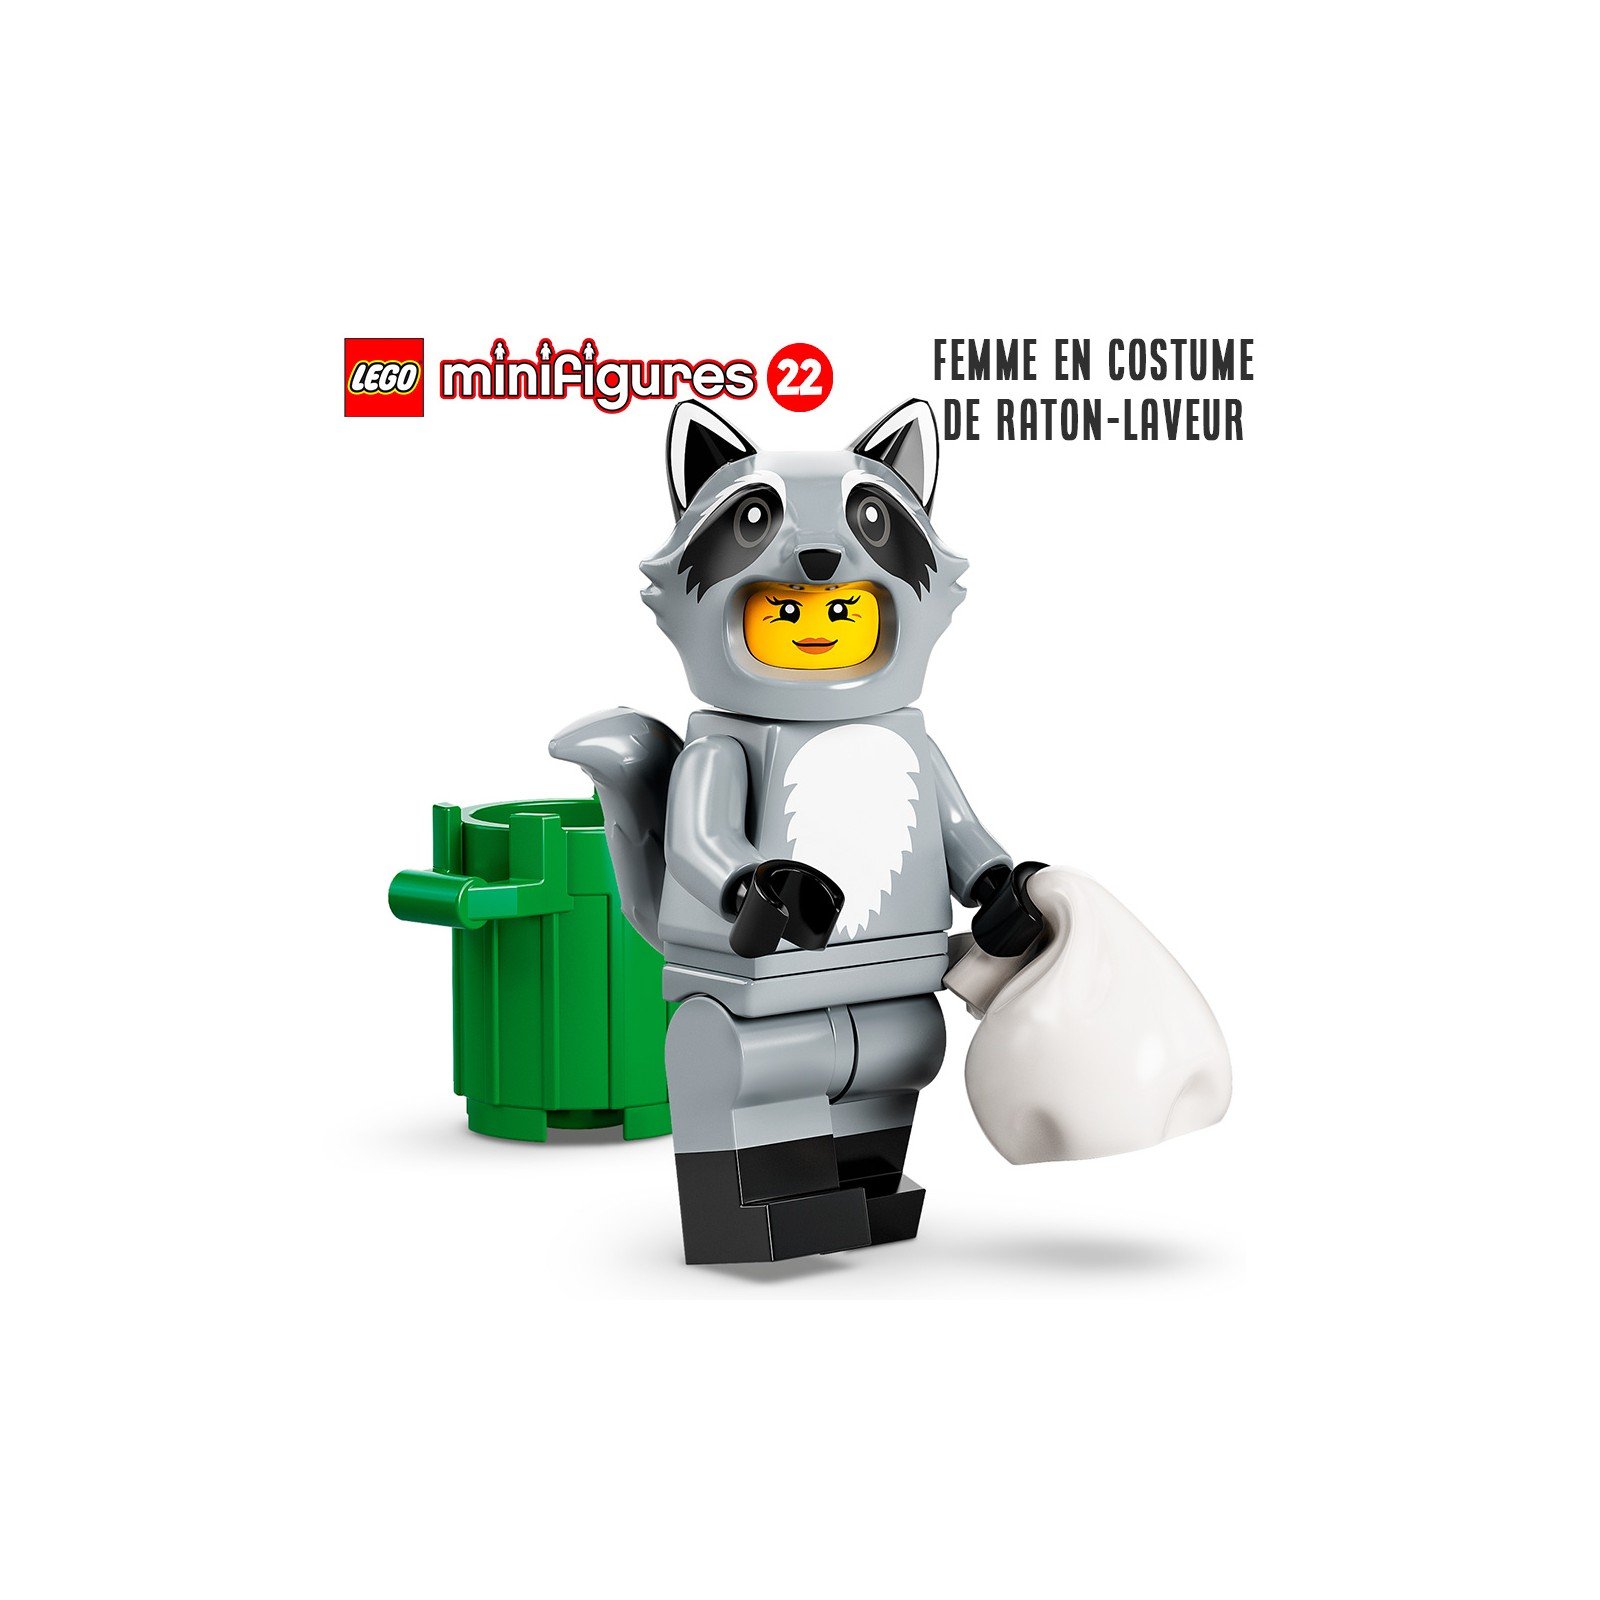 Minifigure LEGO® Série 22 - La femme en costume de raton-laveur